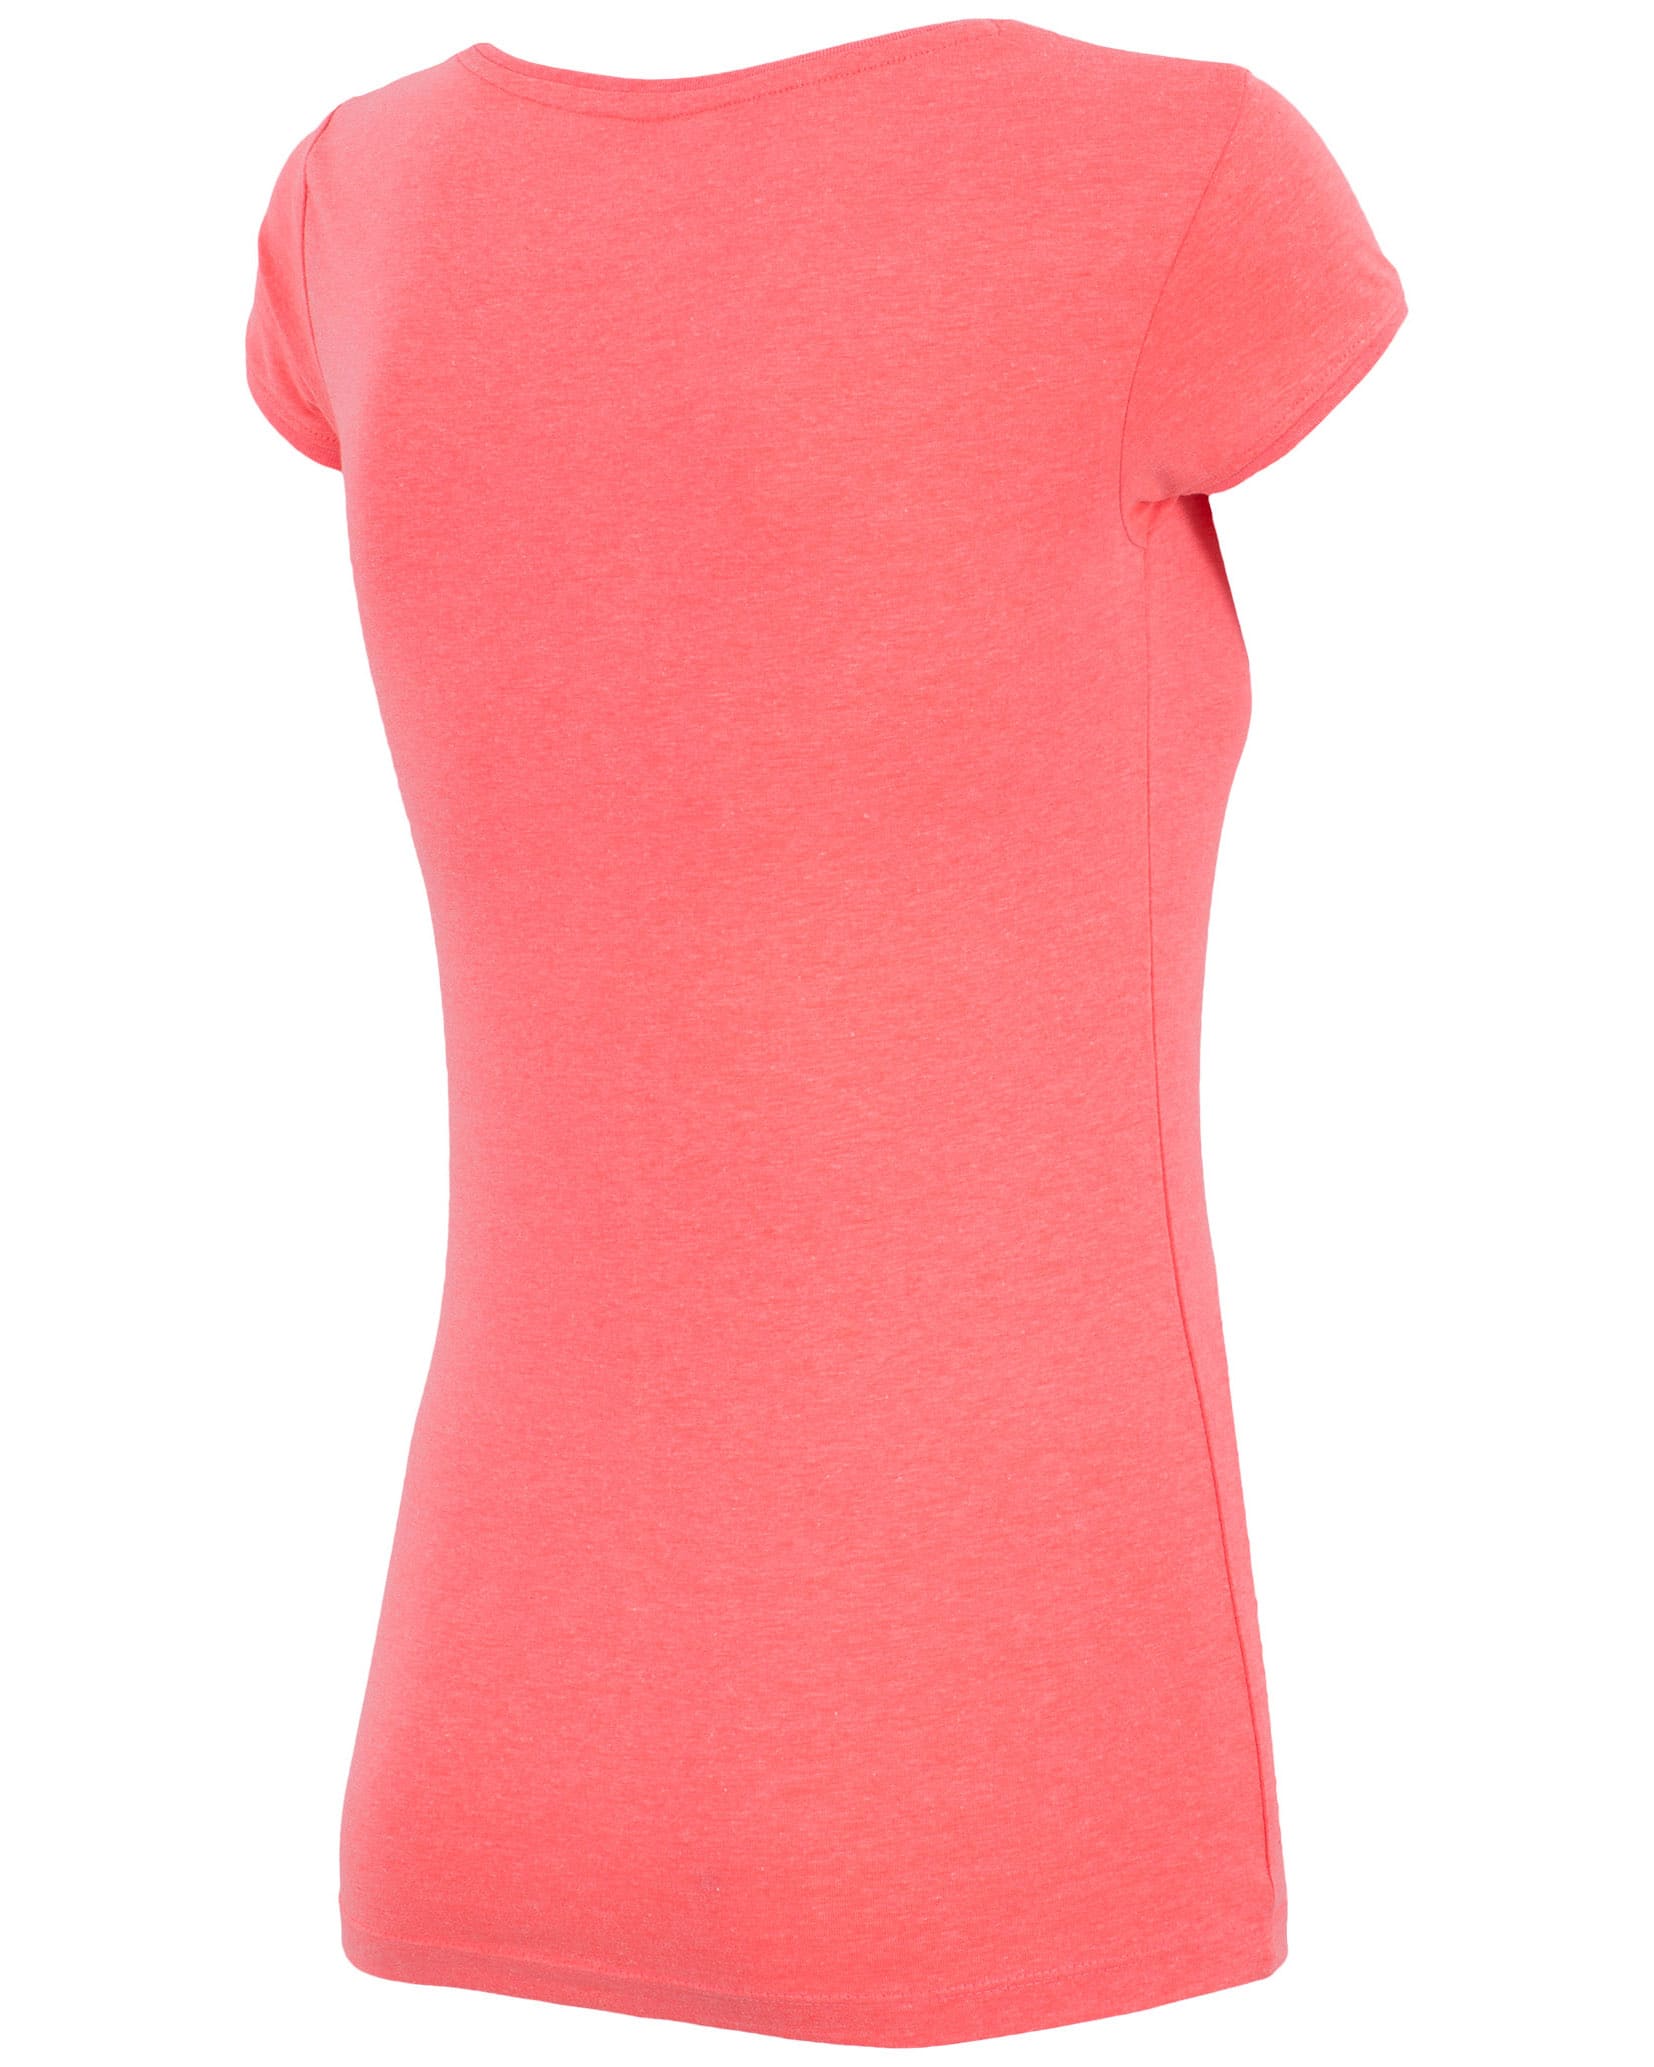 4F T-Shirt - Coral Melange